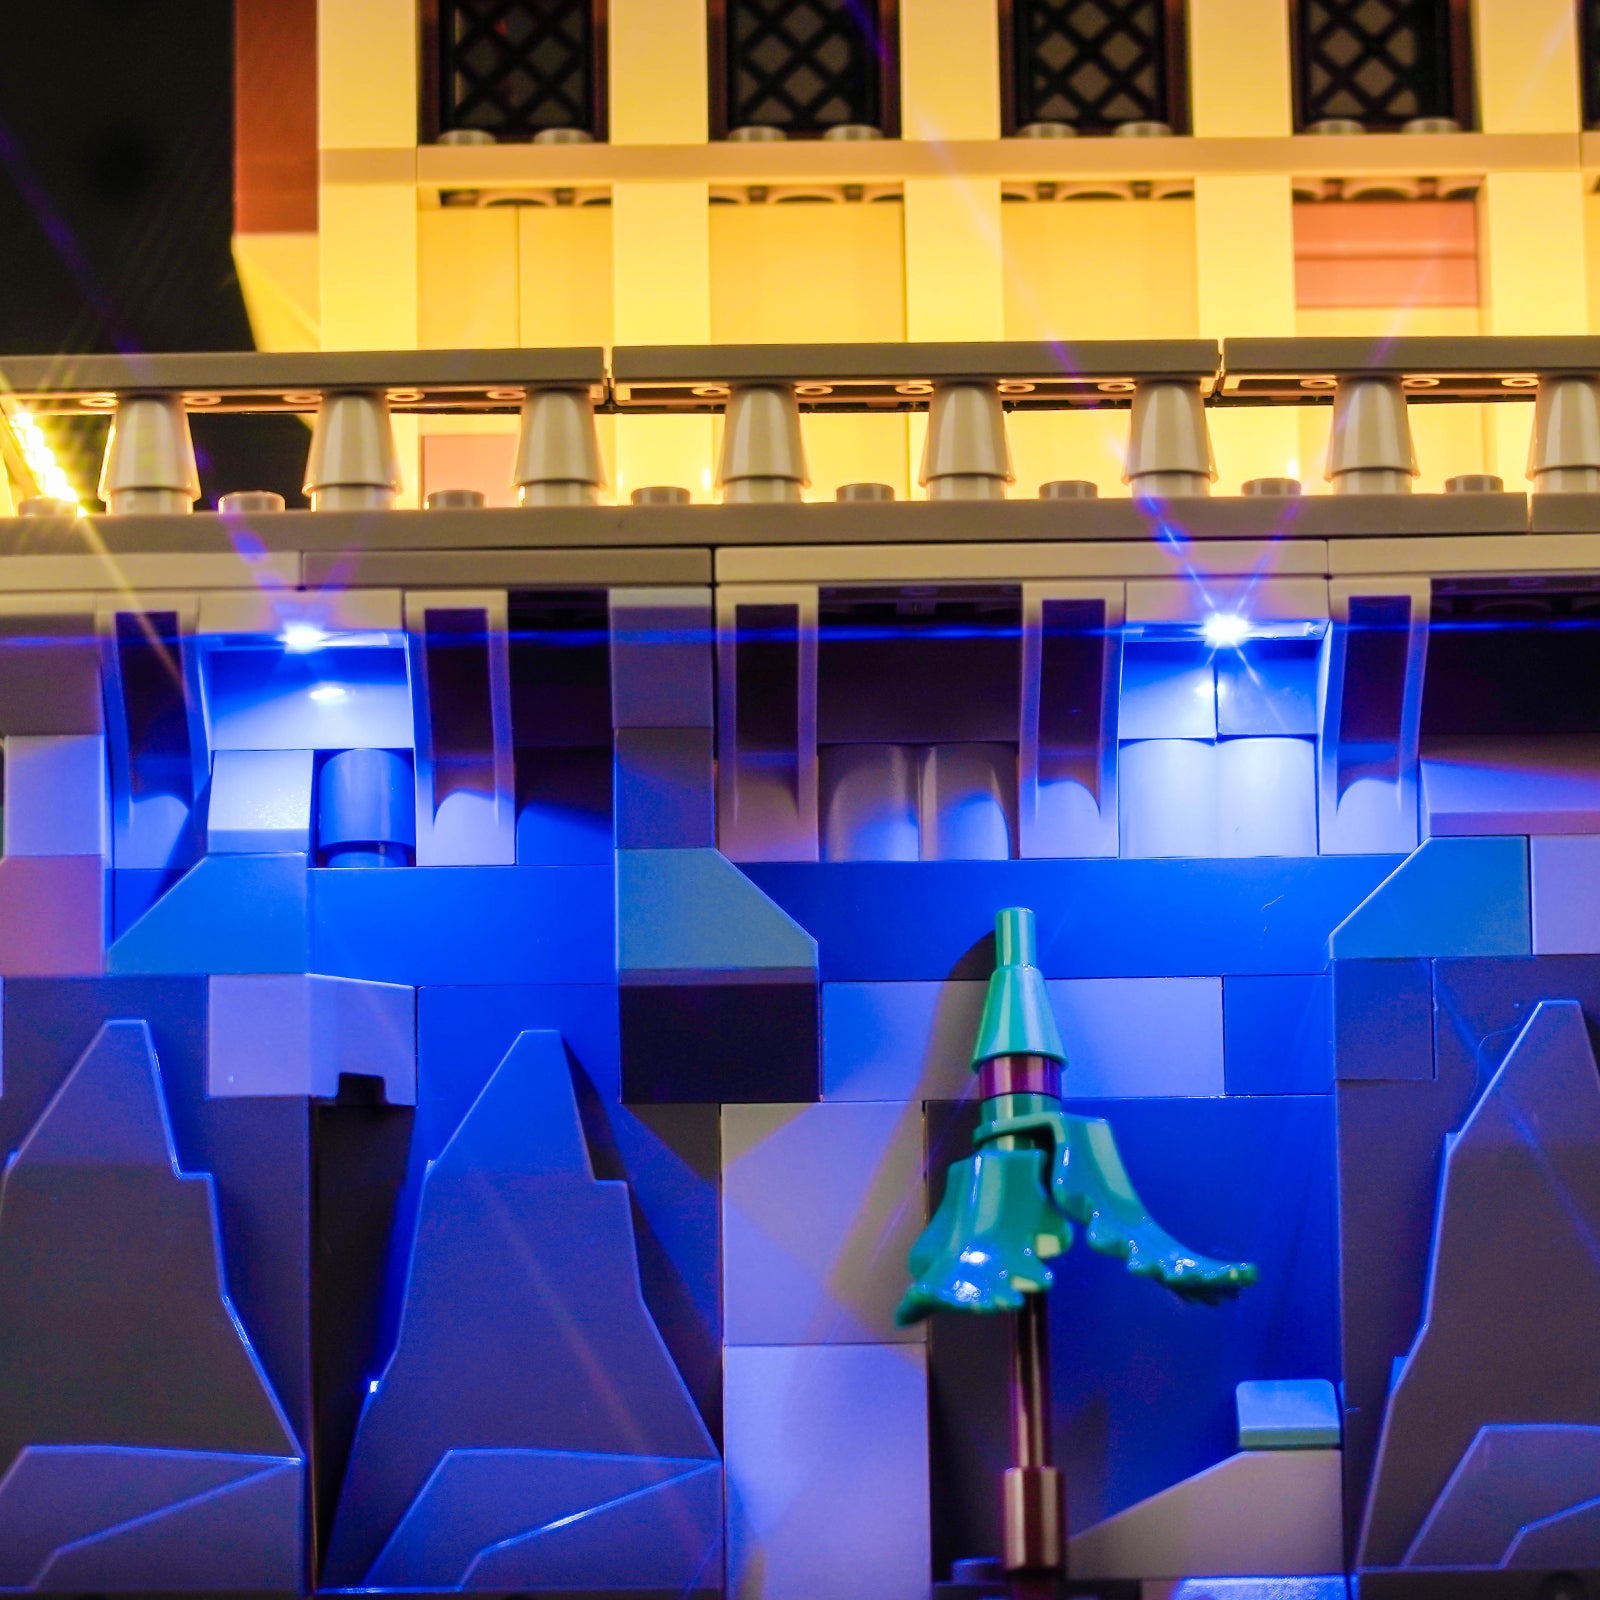 BrickBling Light Kit for LEGO Hogwarts Castle: The Great Hall 76435